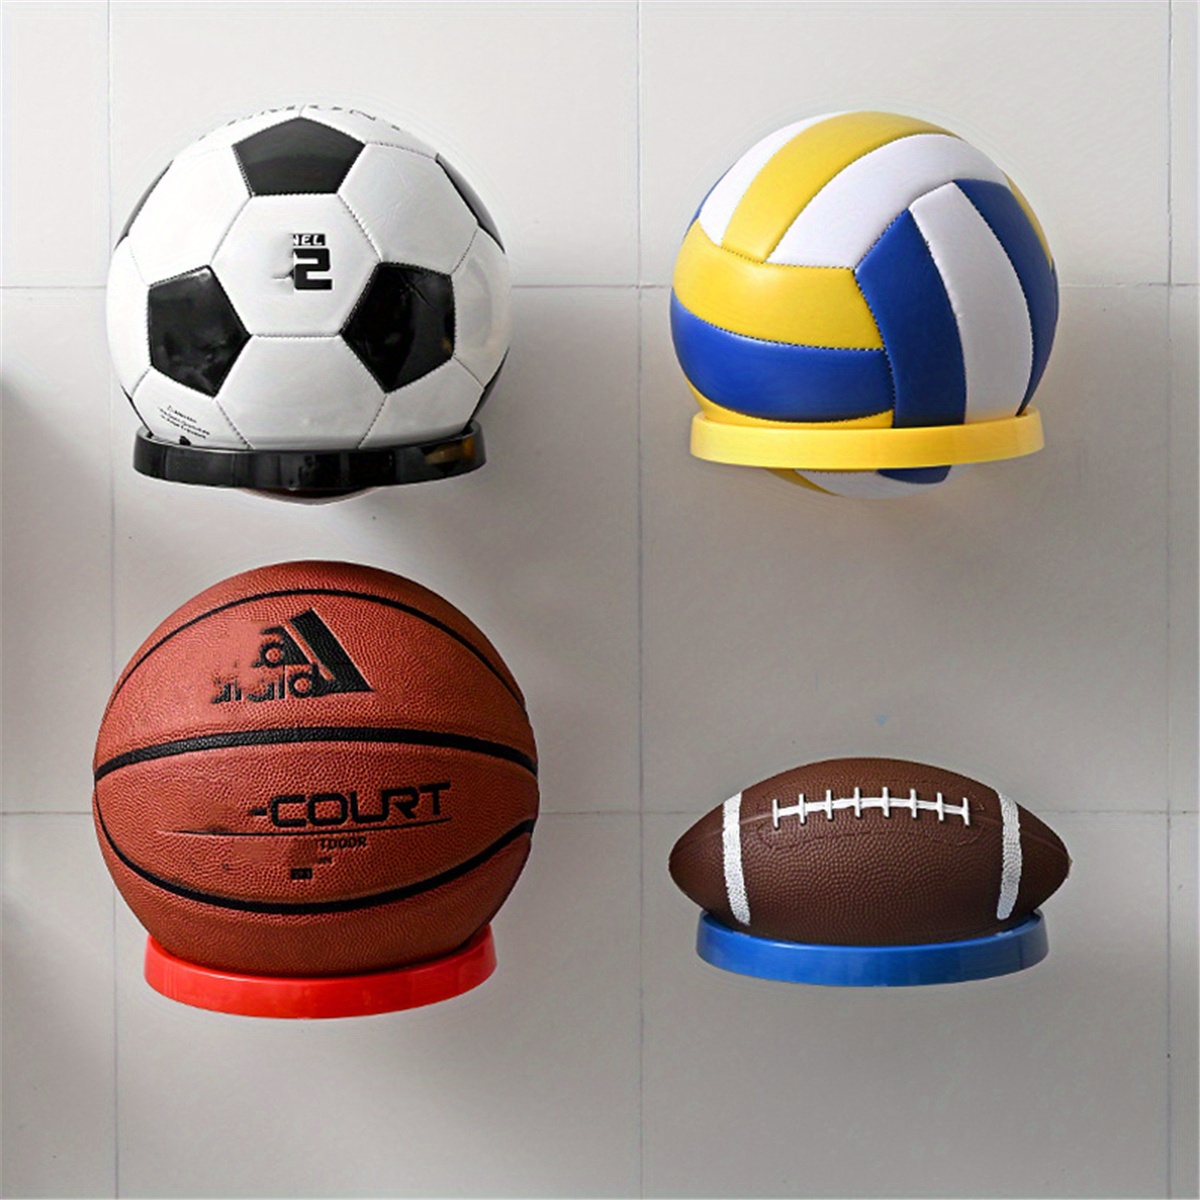 LUNA support de stockage de balle murale support d'article quotidien support  de décoration pratique support de basket-ball Portable pour la maison